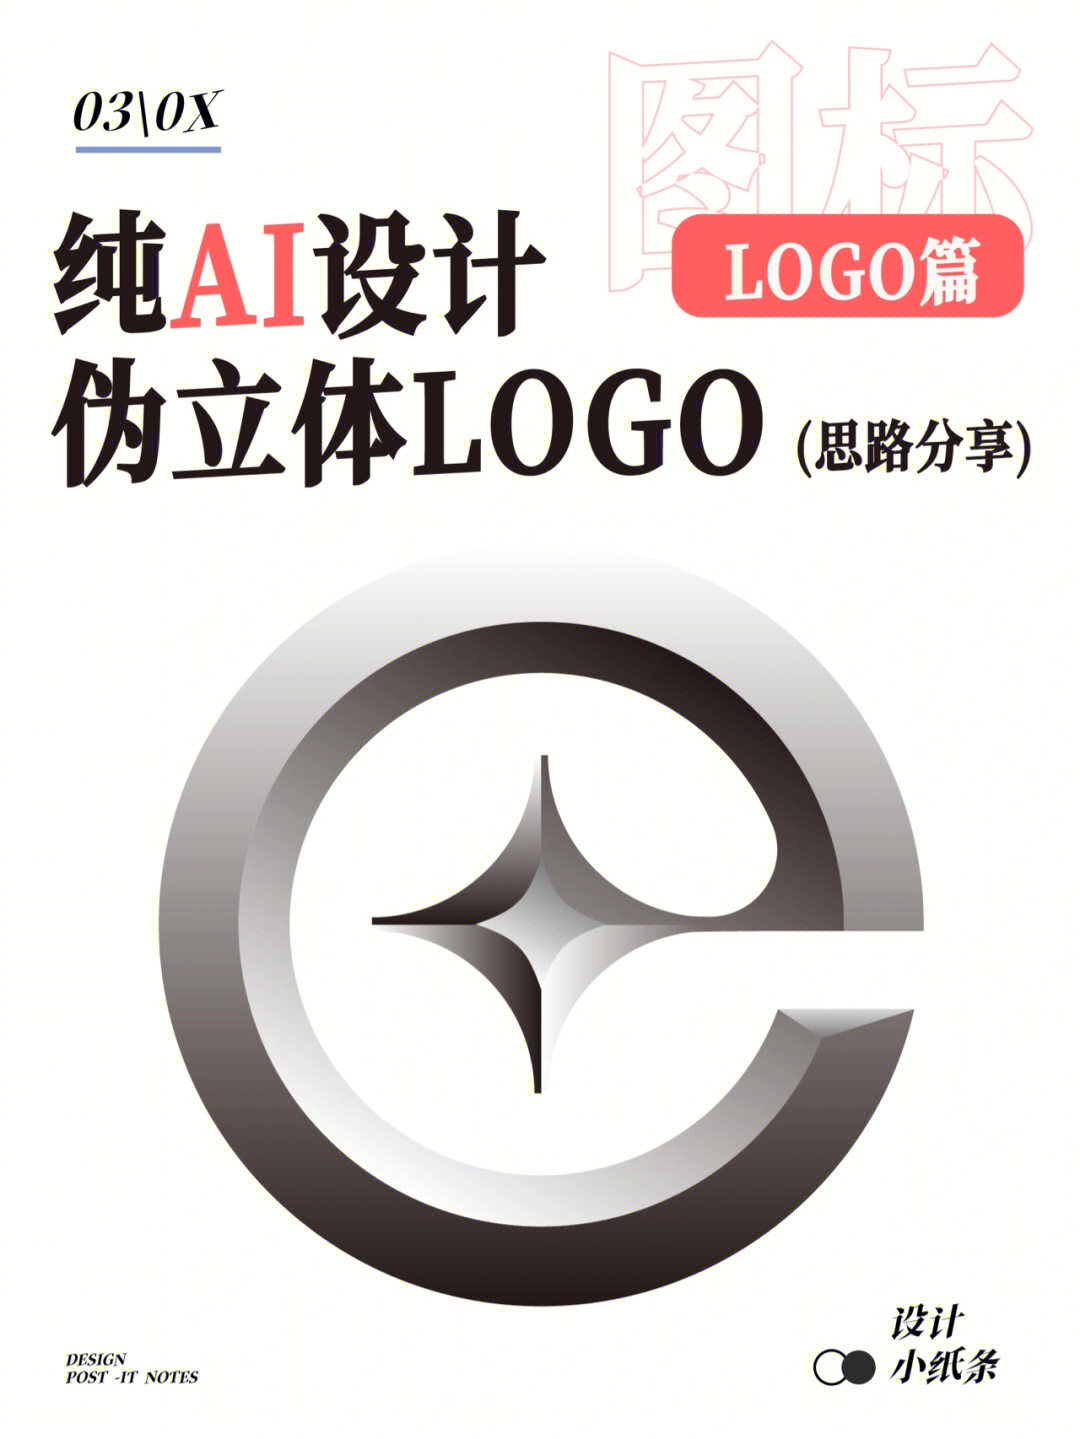 纯ai设计伪立体logo设计思路分享logo篇